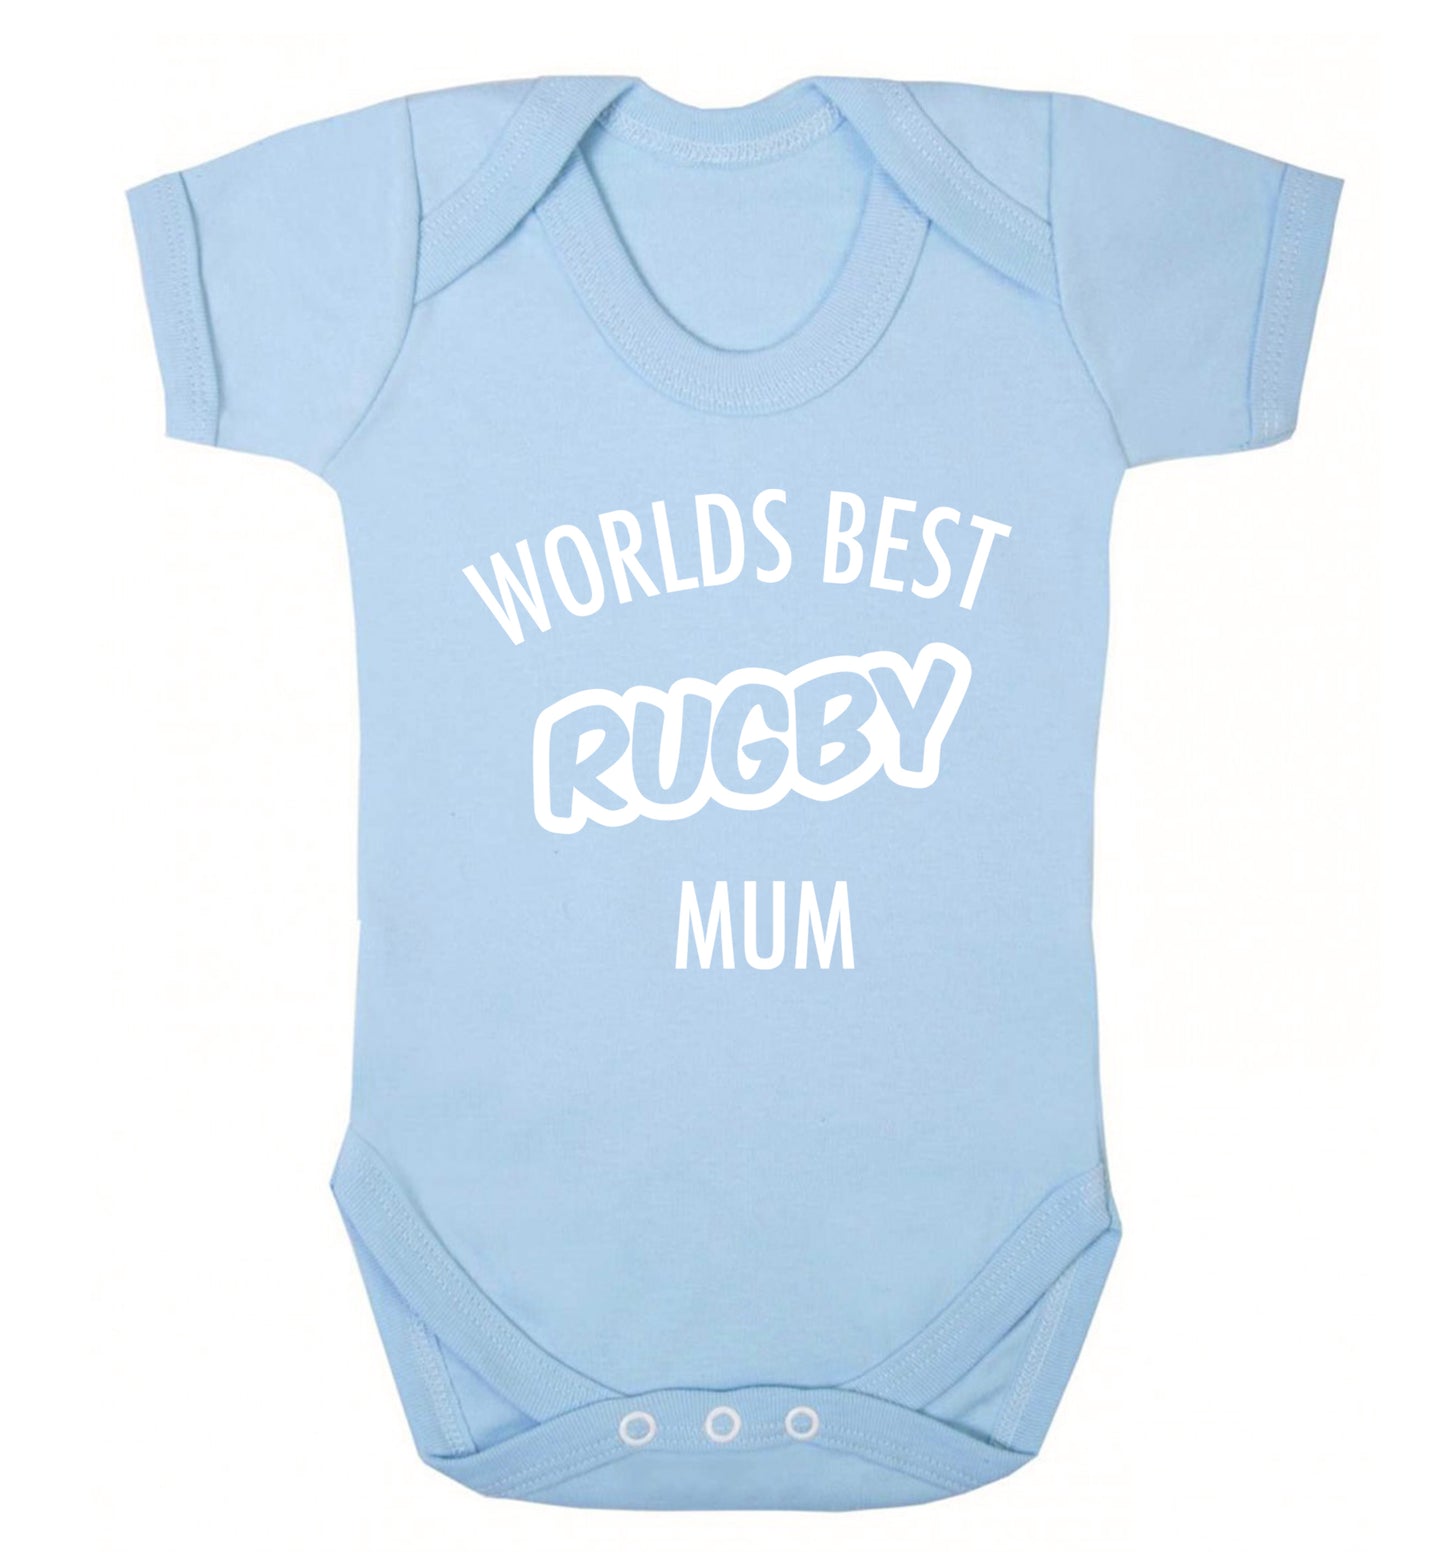 Worlds best rugby mum Baby Vest pale blue 18-24 months